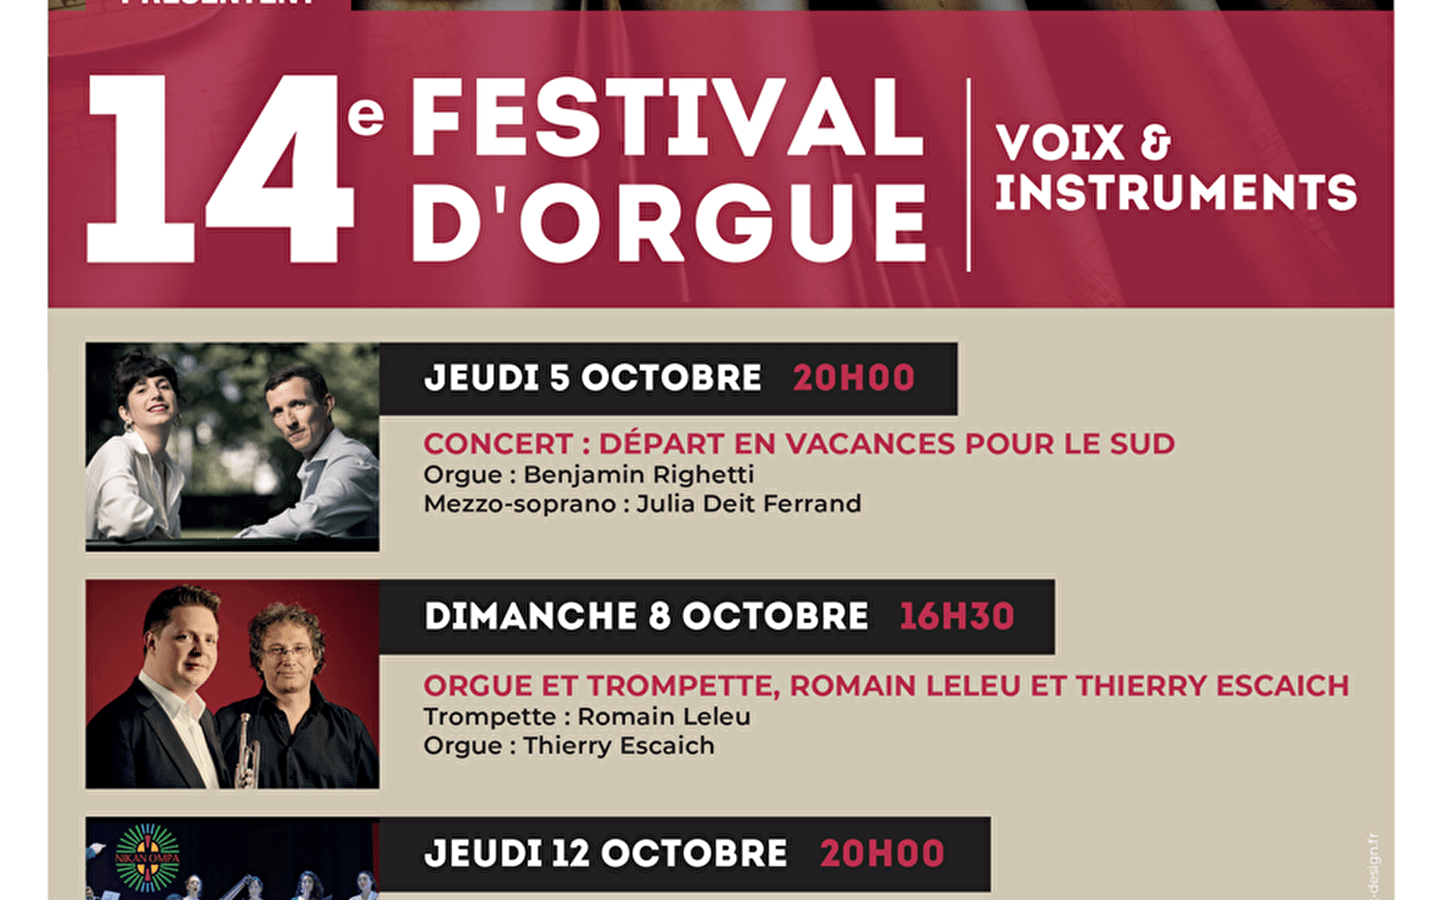 14e festival d'orgue - voix et instruments